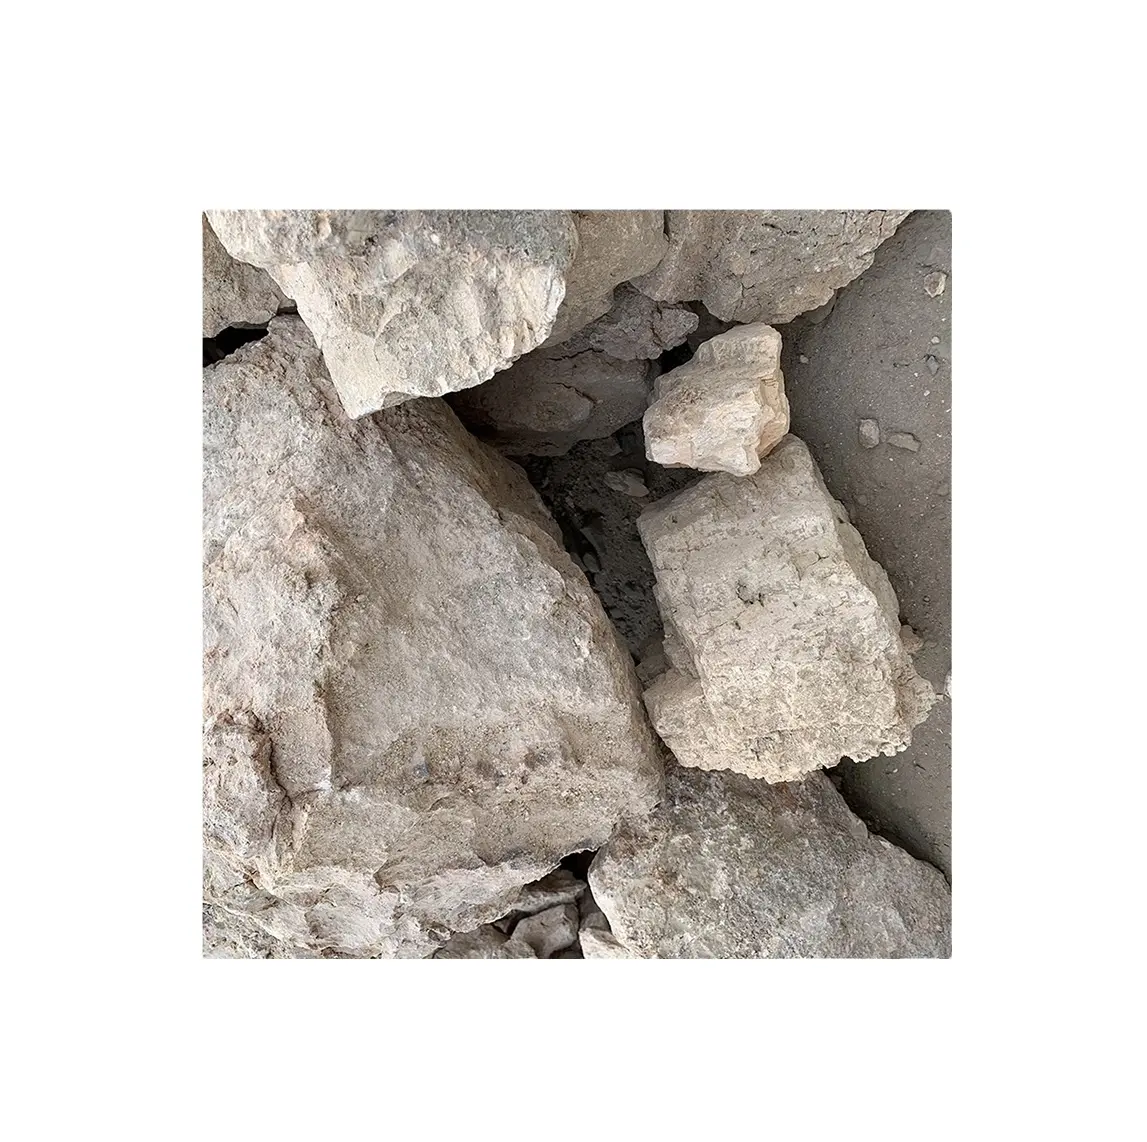 0 50mm 70 bauxite al2o, prix de la Bauxite d'exportation avec détails d'emballage selon vos besoins, qualité de minerai de bauxite blanche